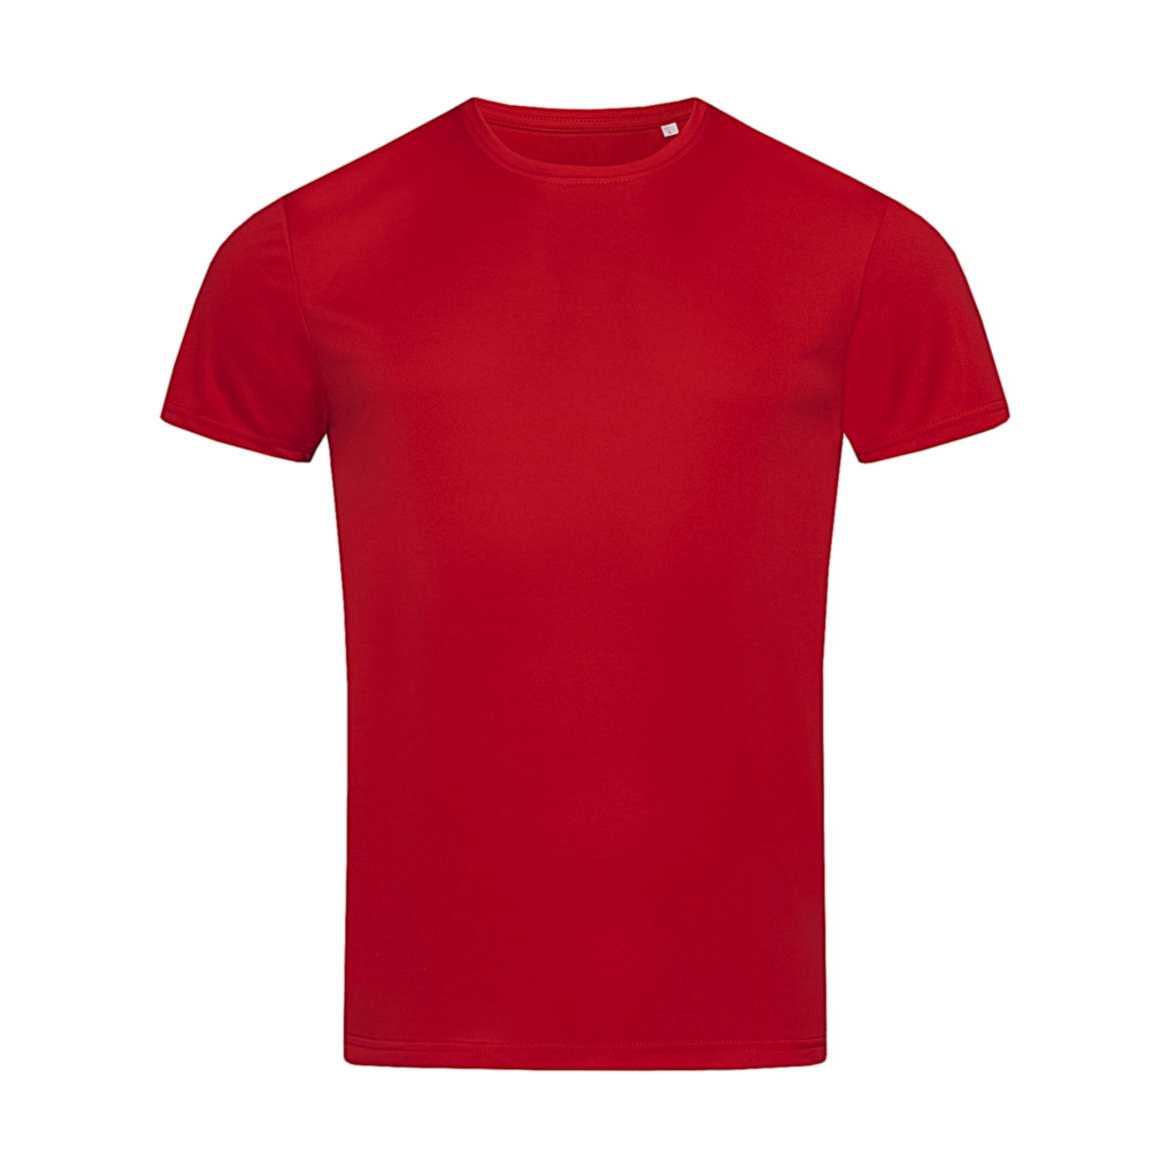 Triko pánské Stedman sportovní tričko - červené, XL